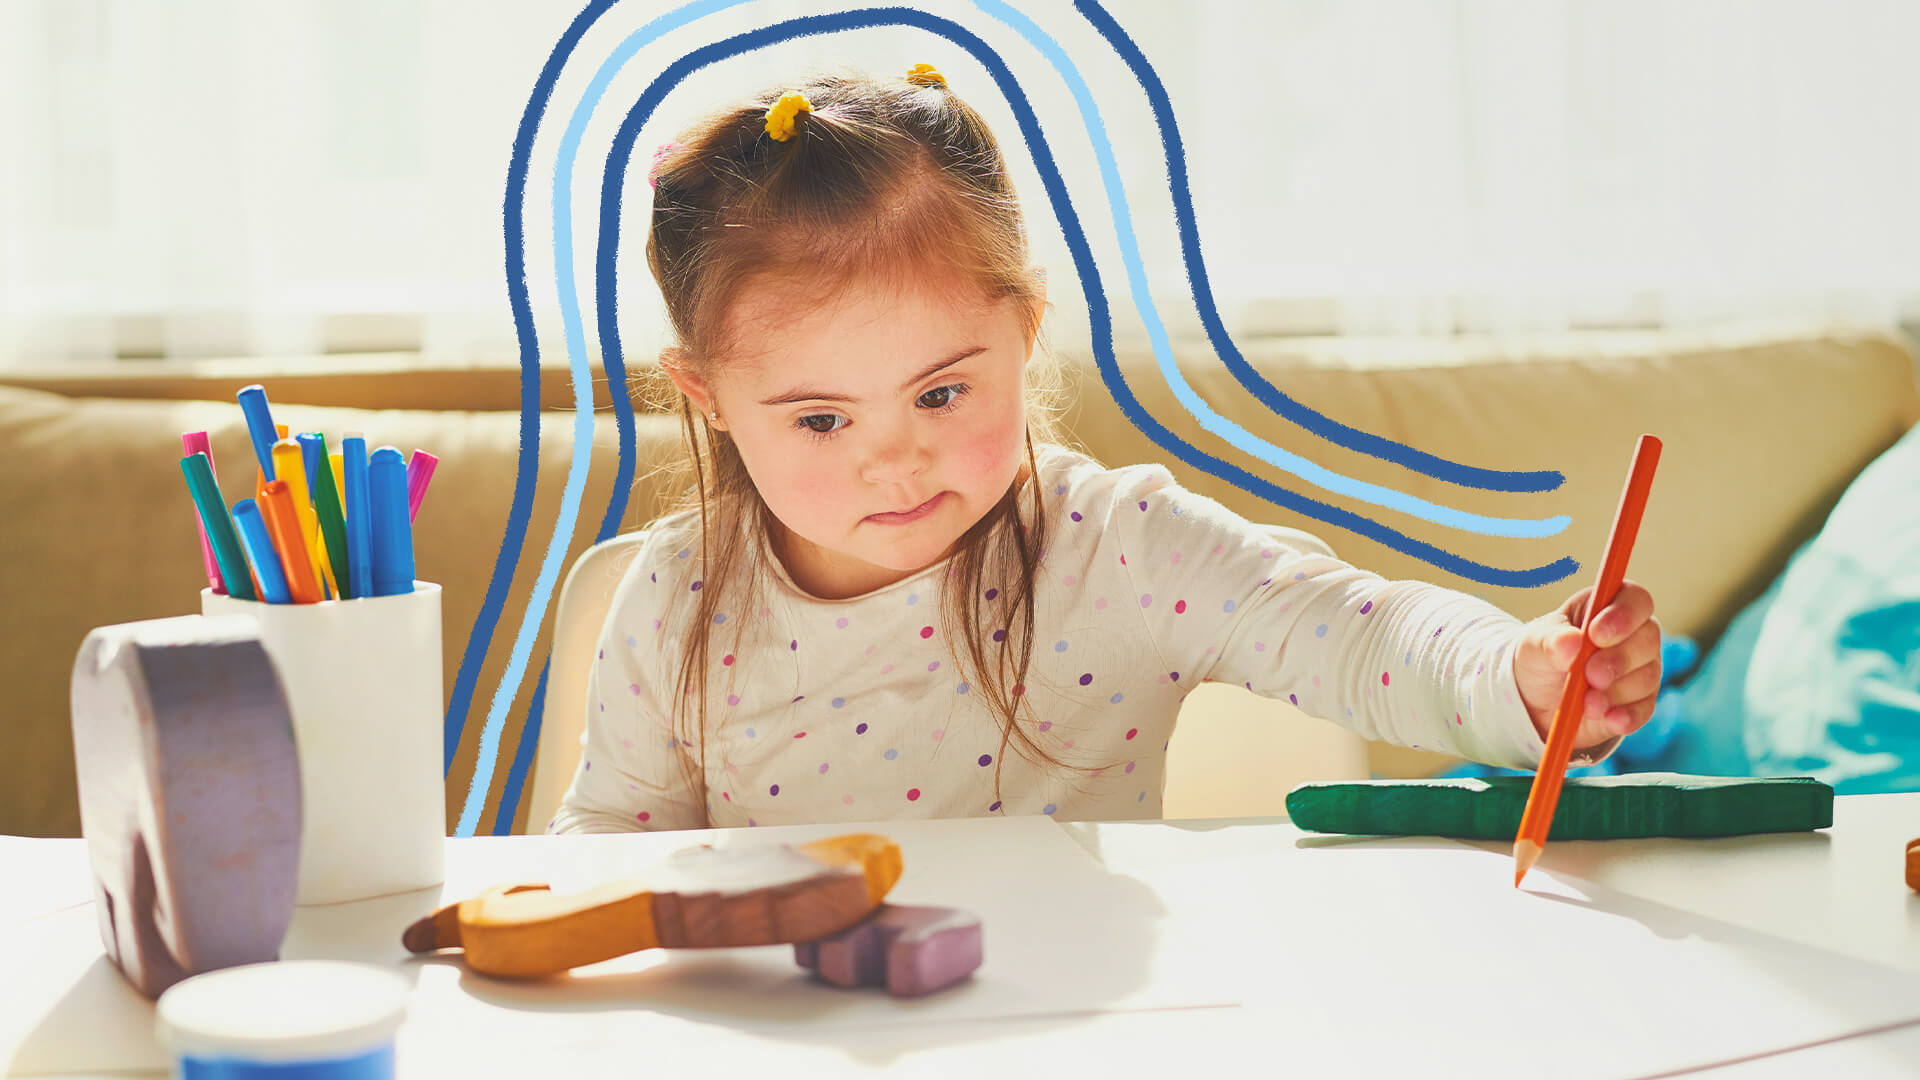 Aumenta número de estudantes matriculados em escolas especiais: Na foto, uma menina de pele clara segura um lápis com a mão esquerda enquanto olha para uma folha de papel e brinquedos. A imagem possui intervenções de rabiscos coloridos.